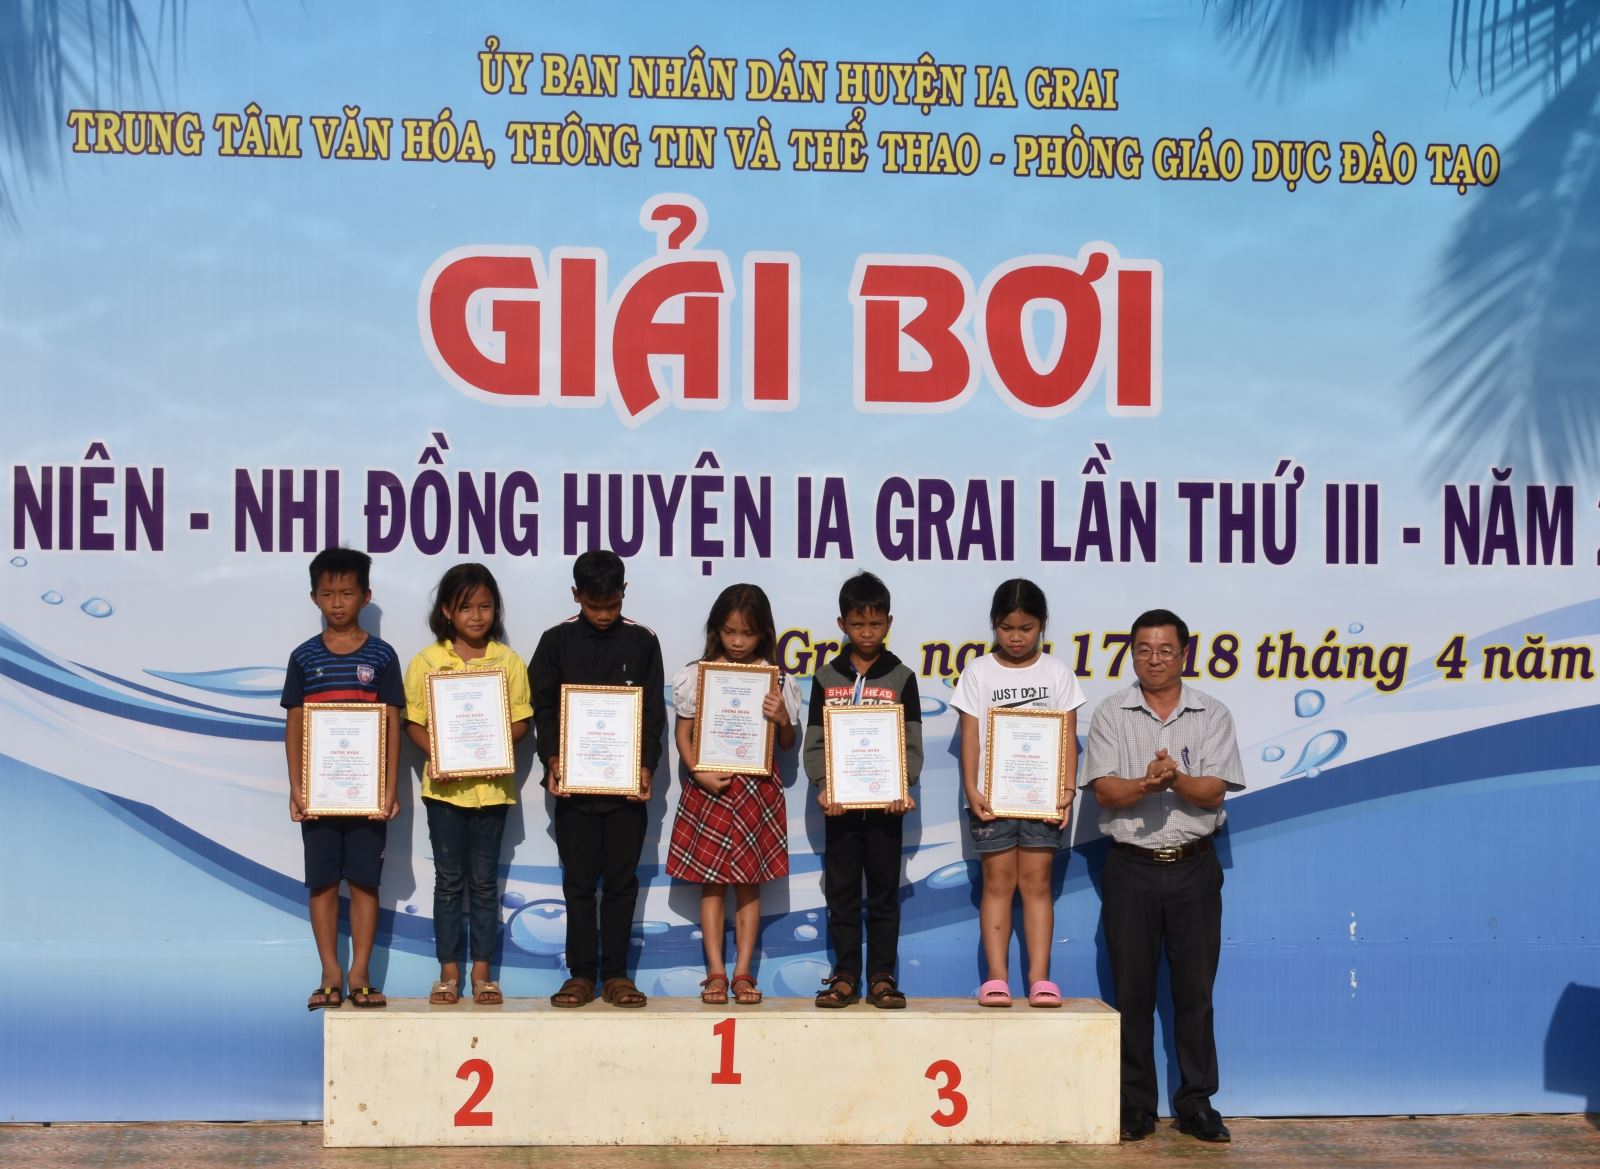 Article Gần 90 vận động viên dự Giải bơi thiếu niên-nhi đồng huyện Ia Grai